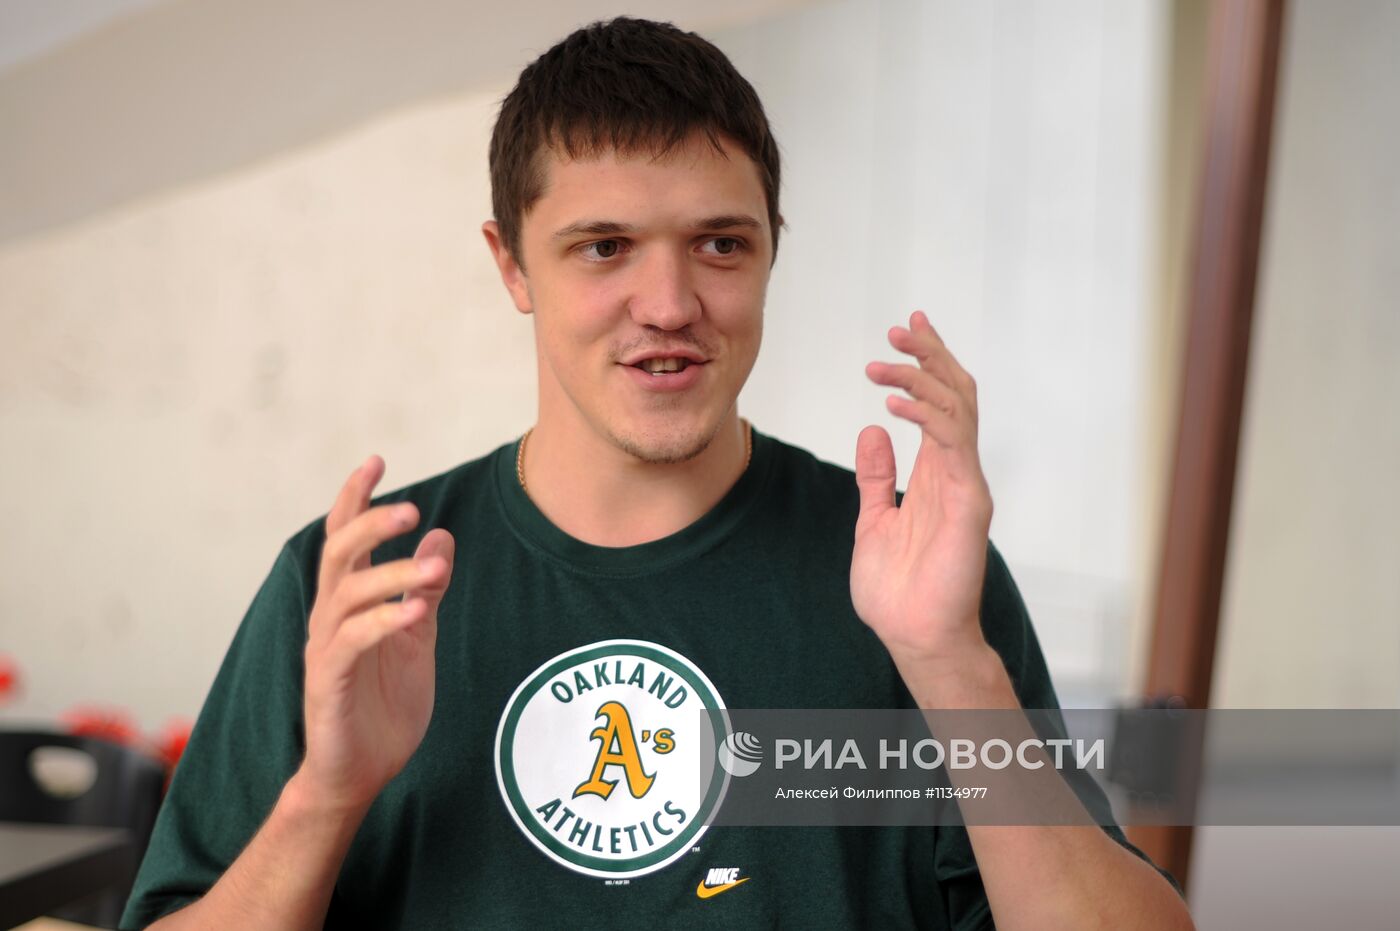 Интервью с членом сборной России по баскетболу Семеном Антоновым